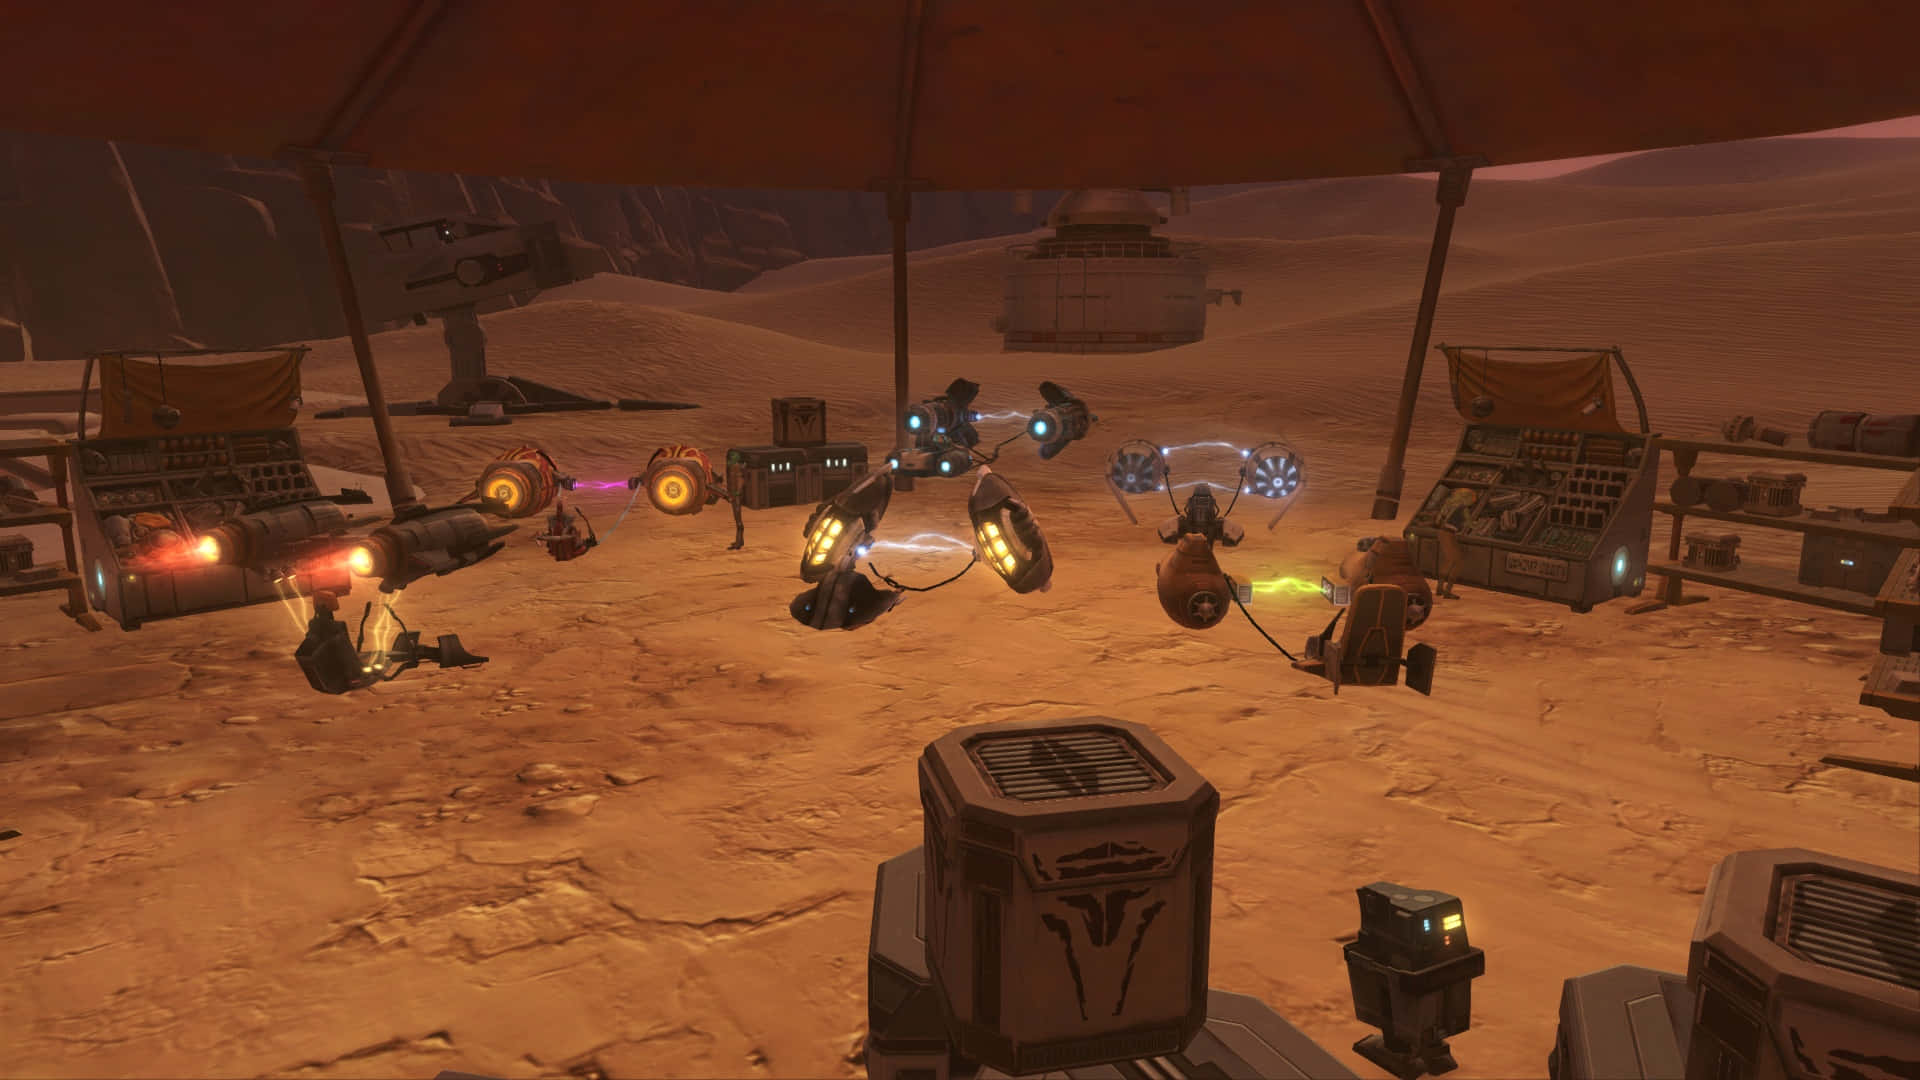 Intensabatalla De Podracing En El Desierto De Tatooine. Fondo de pantalla